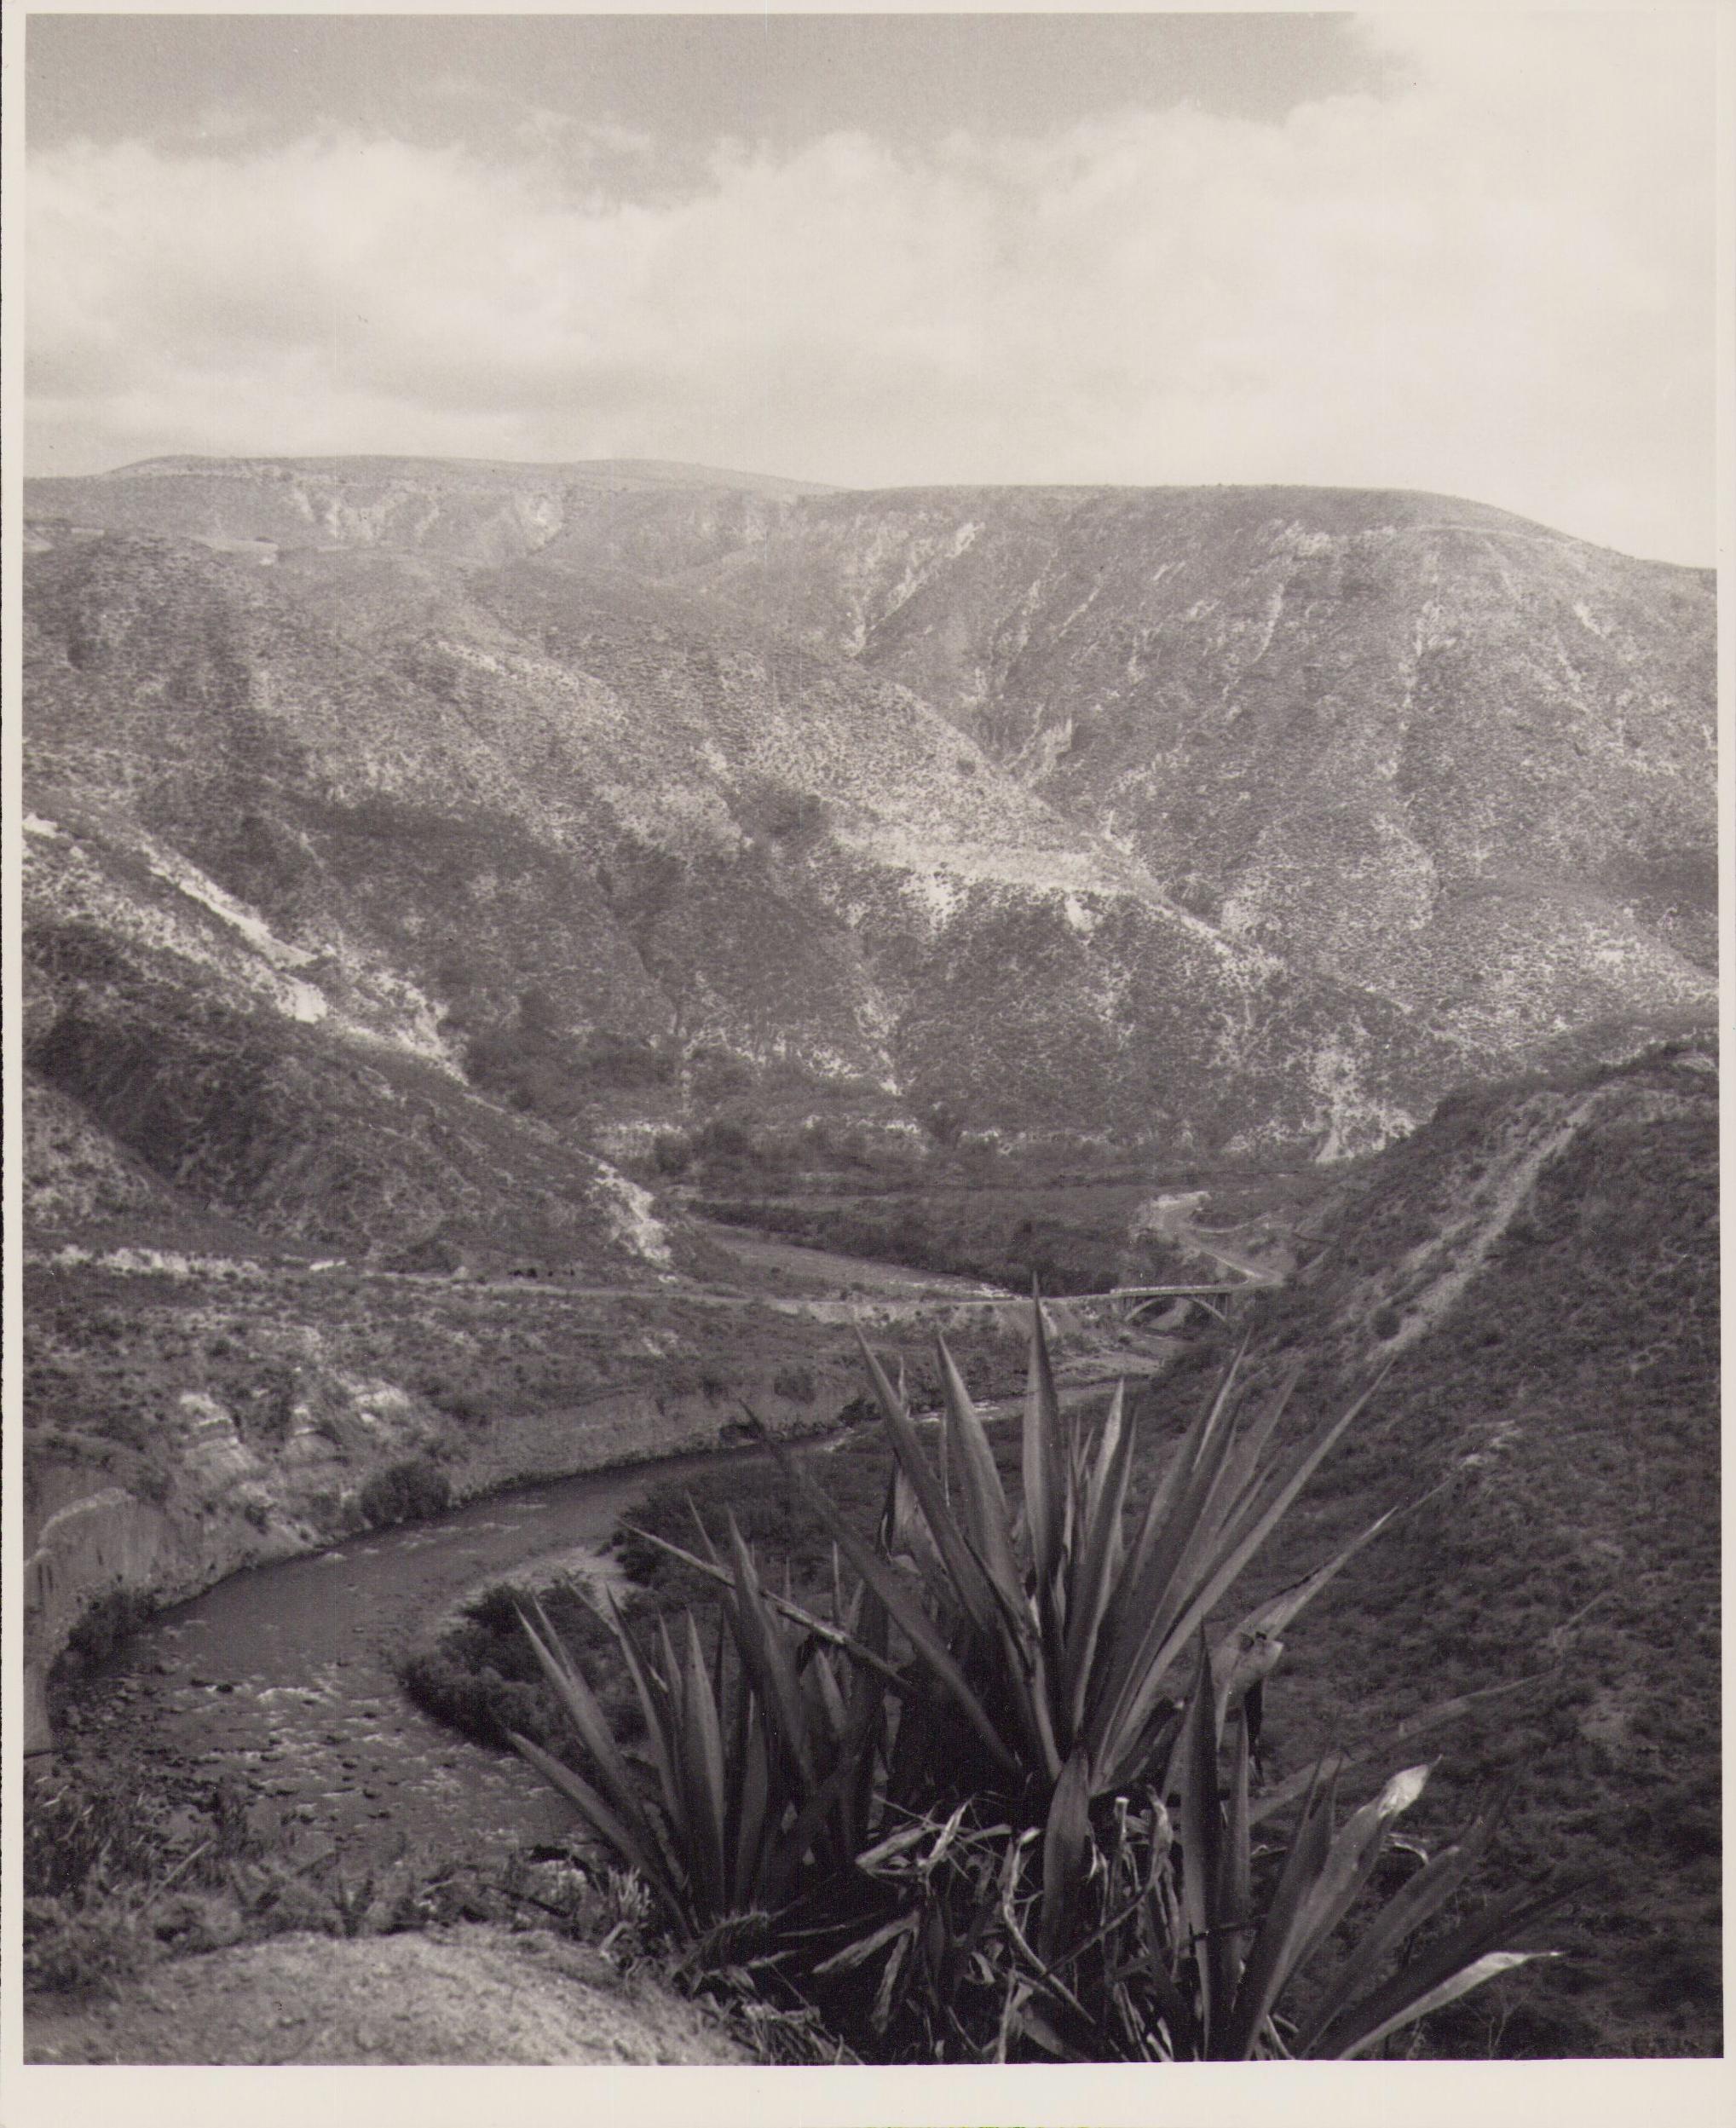 Hanna Seidel Portrait Photograph - Ecuador, Landscape, Black and White Photography, 1960s, 21, 2 X 17, 2 cm